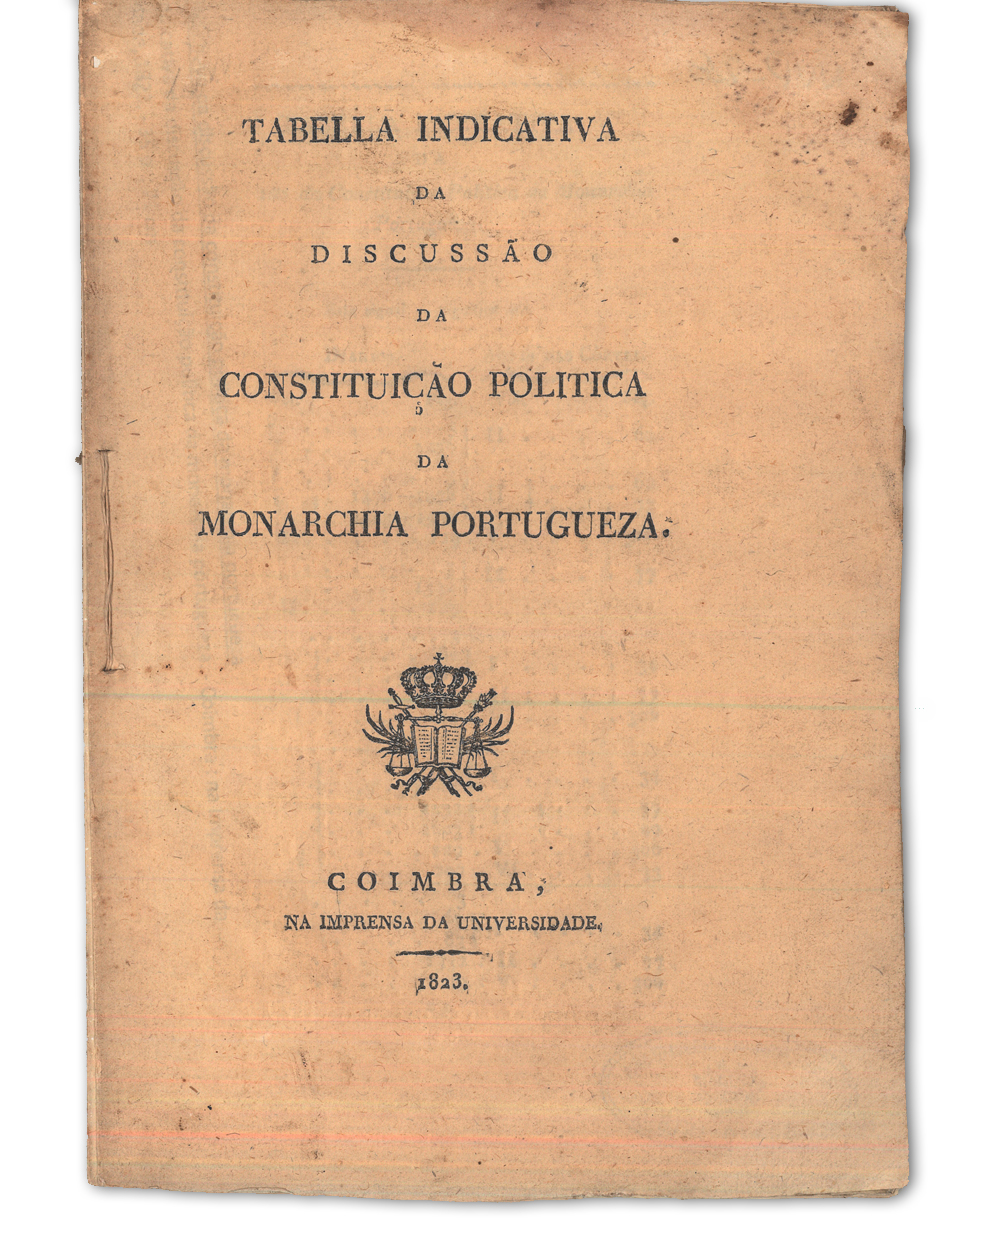 Tabella indicativa da discussão da constituição politica da monarchia portugueza. Coimbra : na Imprensa da Universidade, 1823. Cota: NVP-26